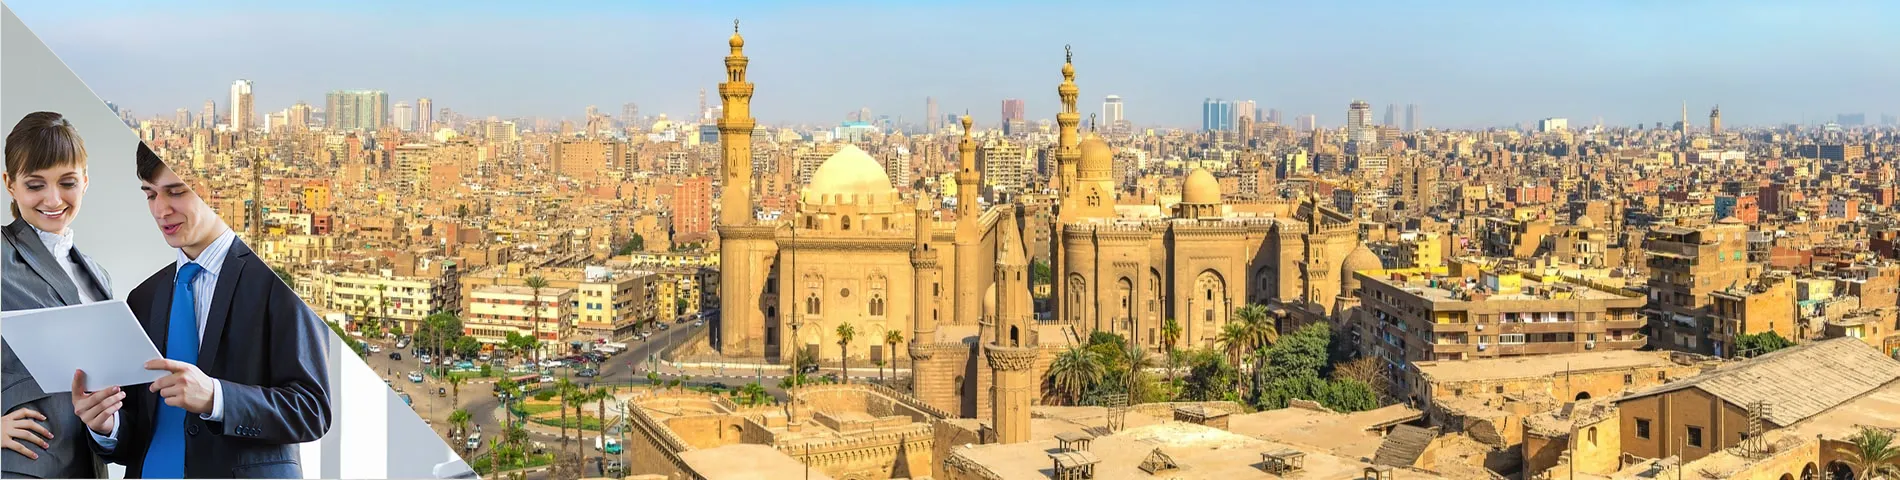 Caïro - Business één-op-één